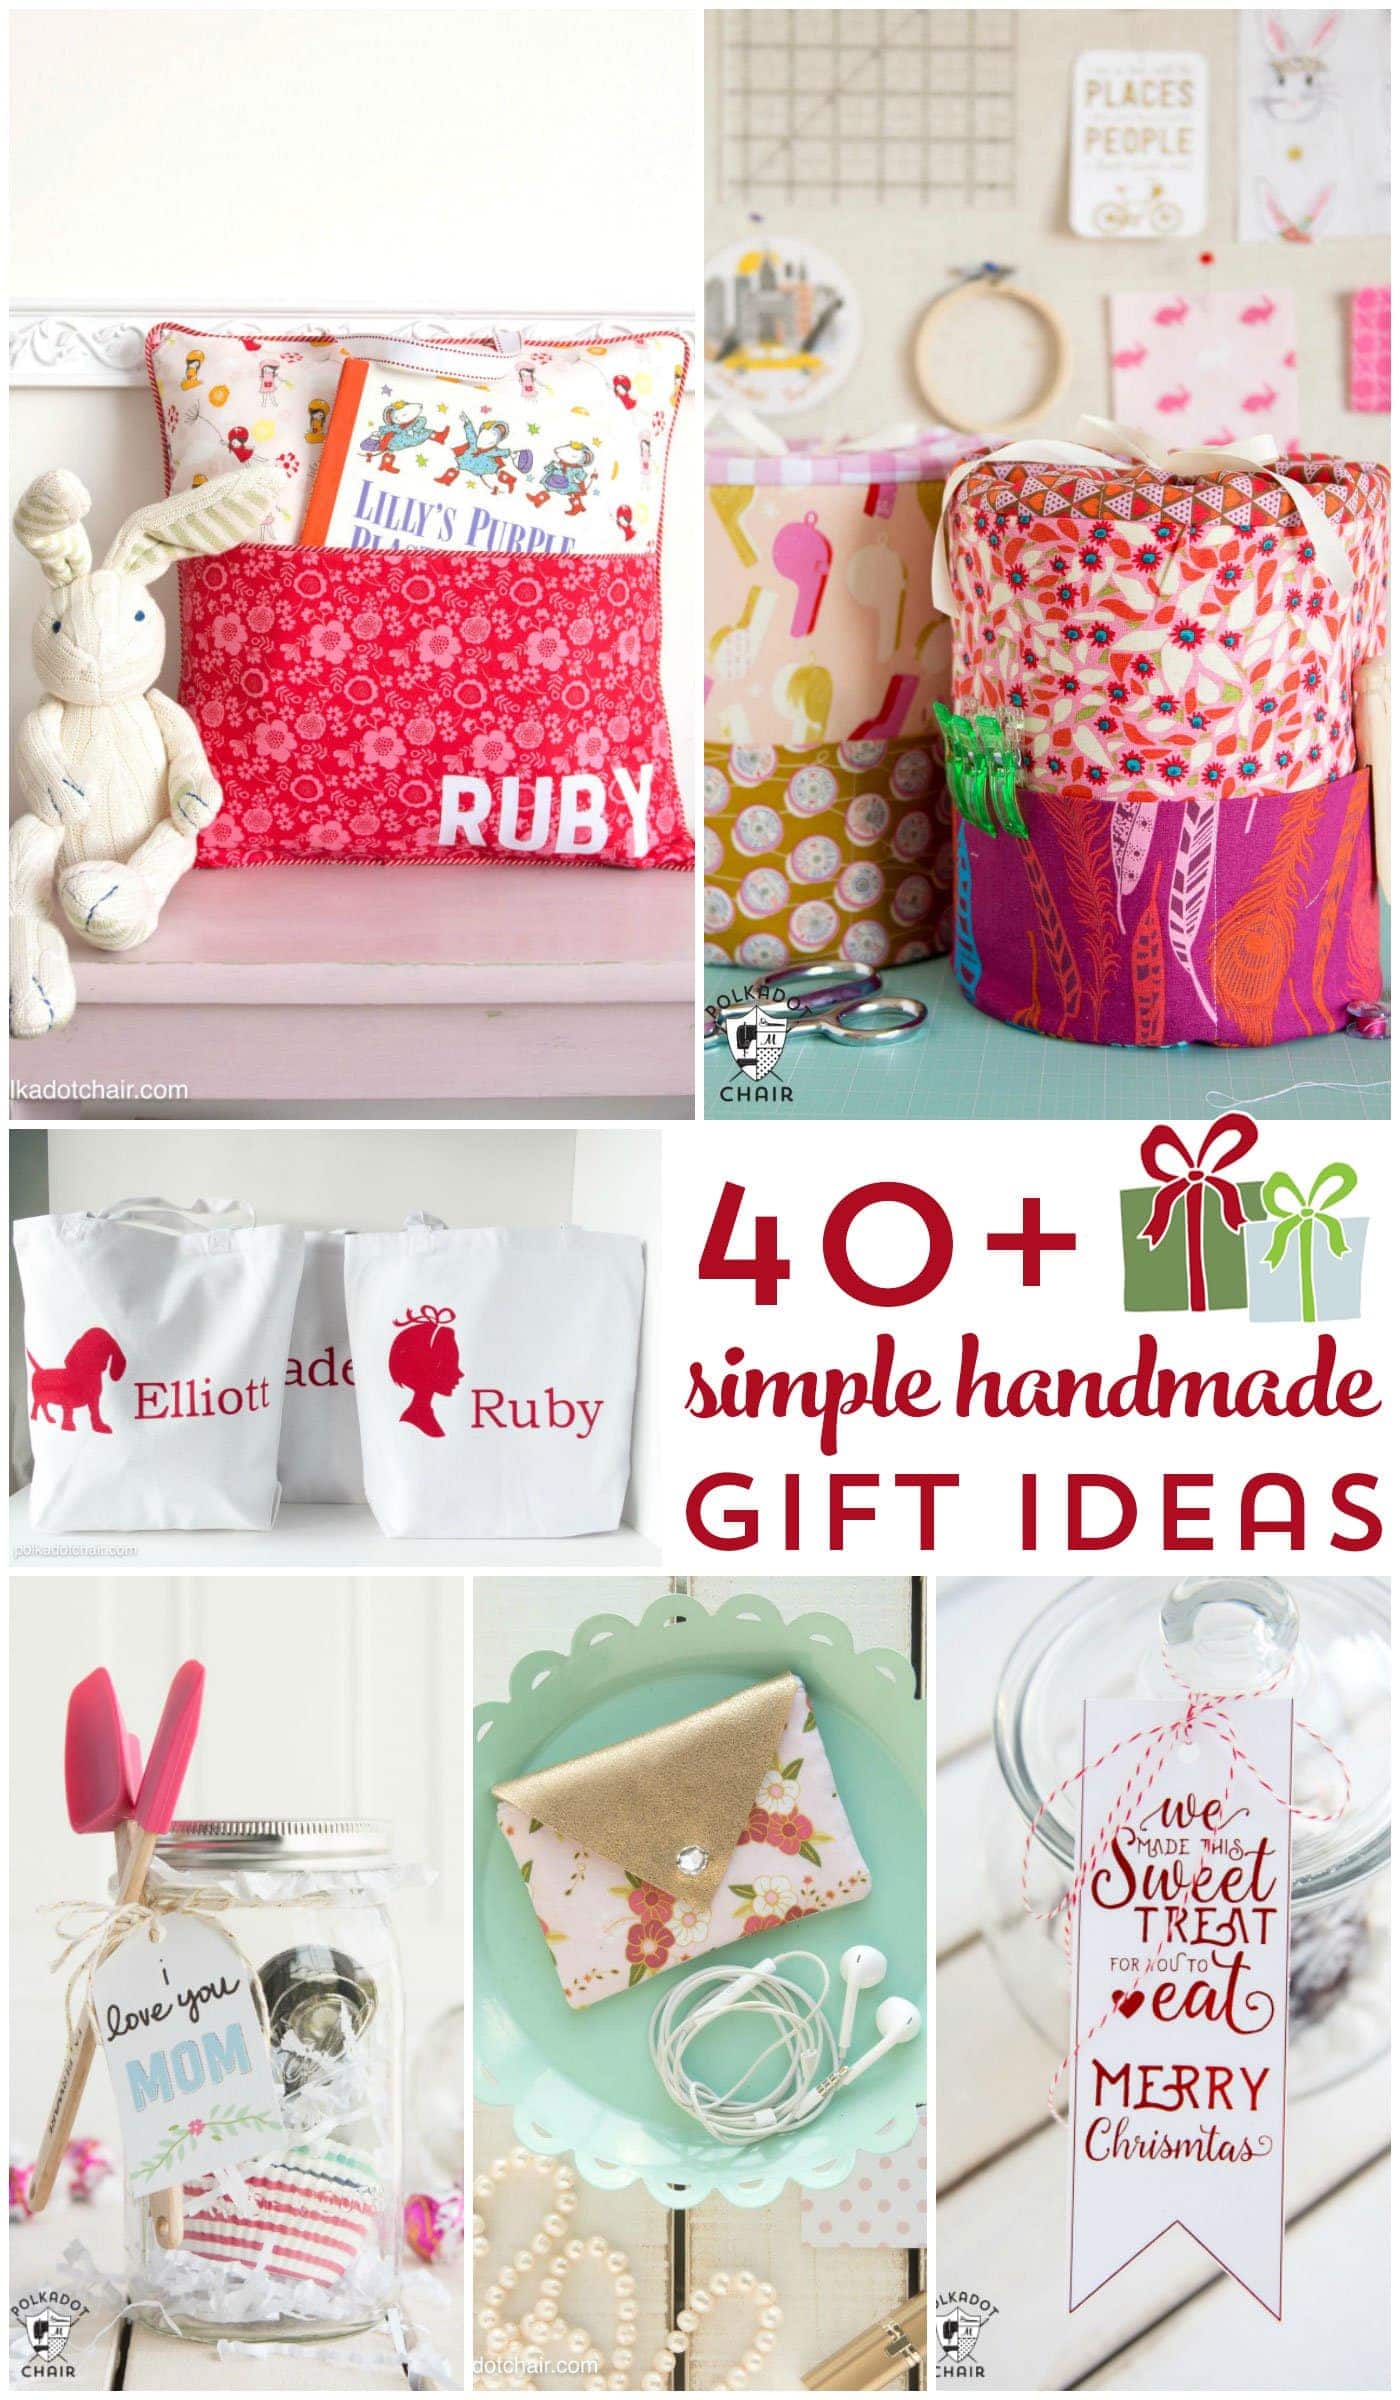 More than 40 Simple Handmade Gift Ideas The Polka Dot Chair